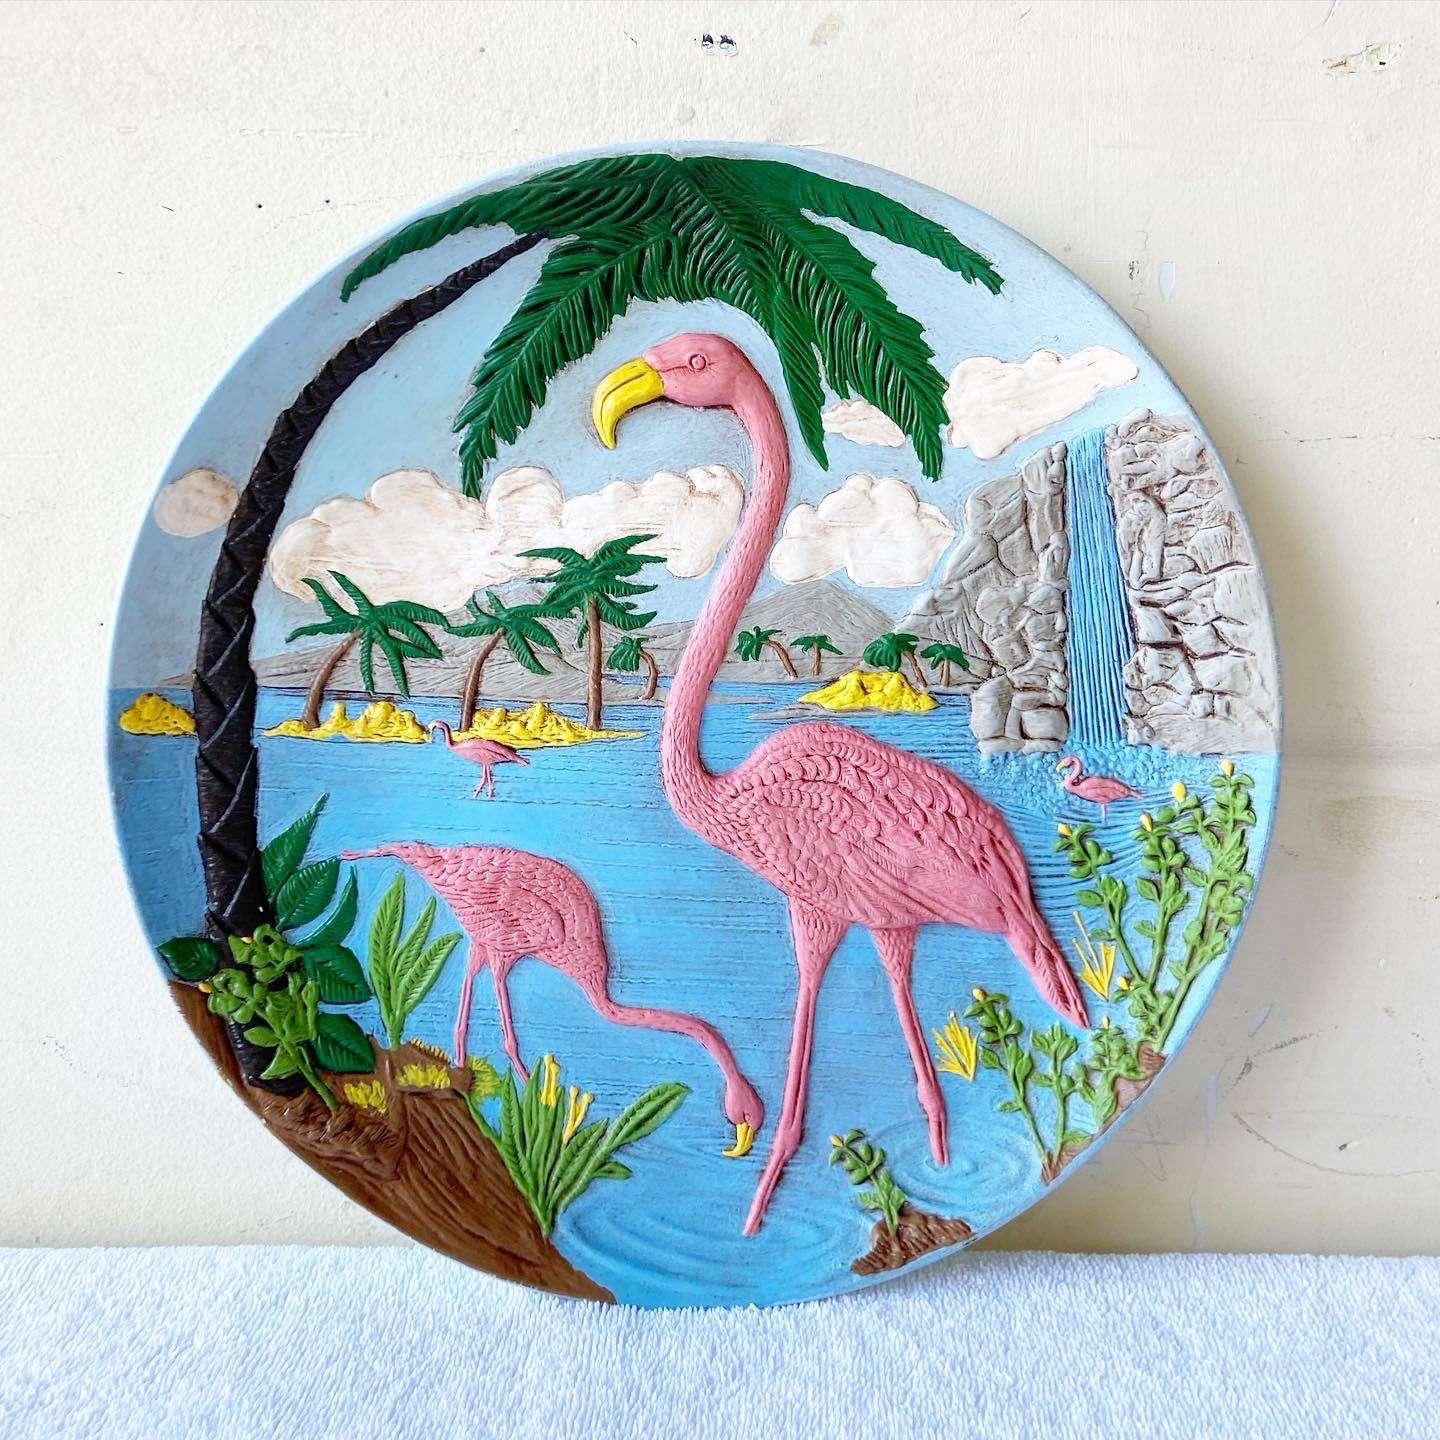 Wunderschöner dekorativer Vintage-Teller aus tropischer Keramik. Mit geformten und handbemalten Flamingos, Palmen und tropischen Vibes.
